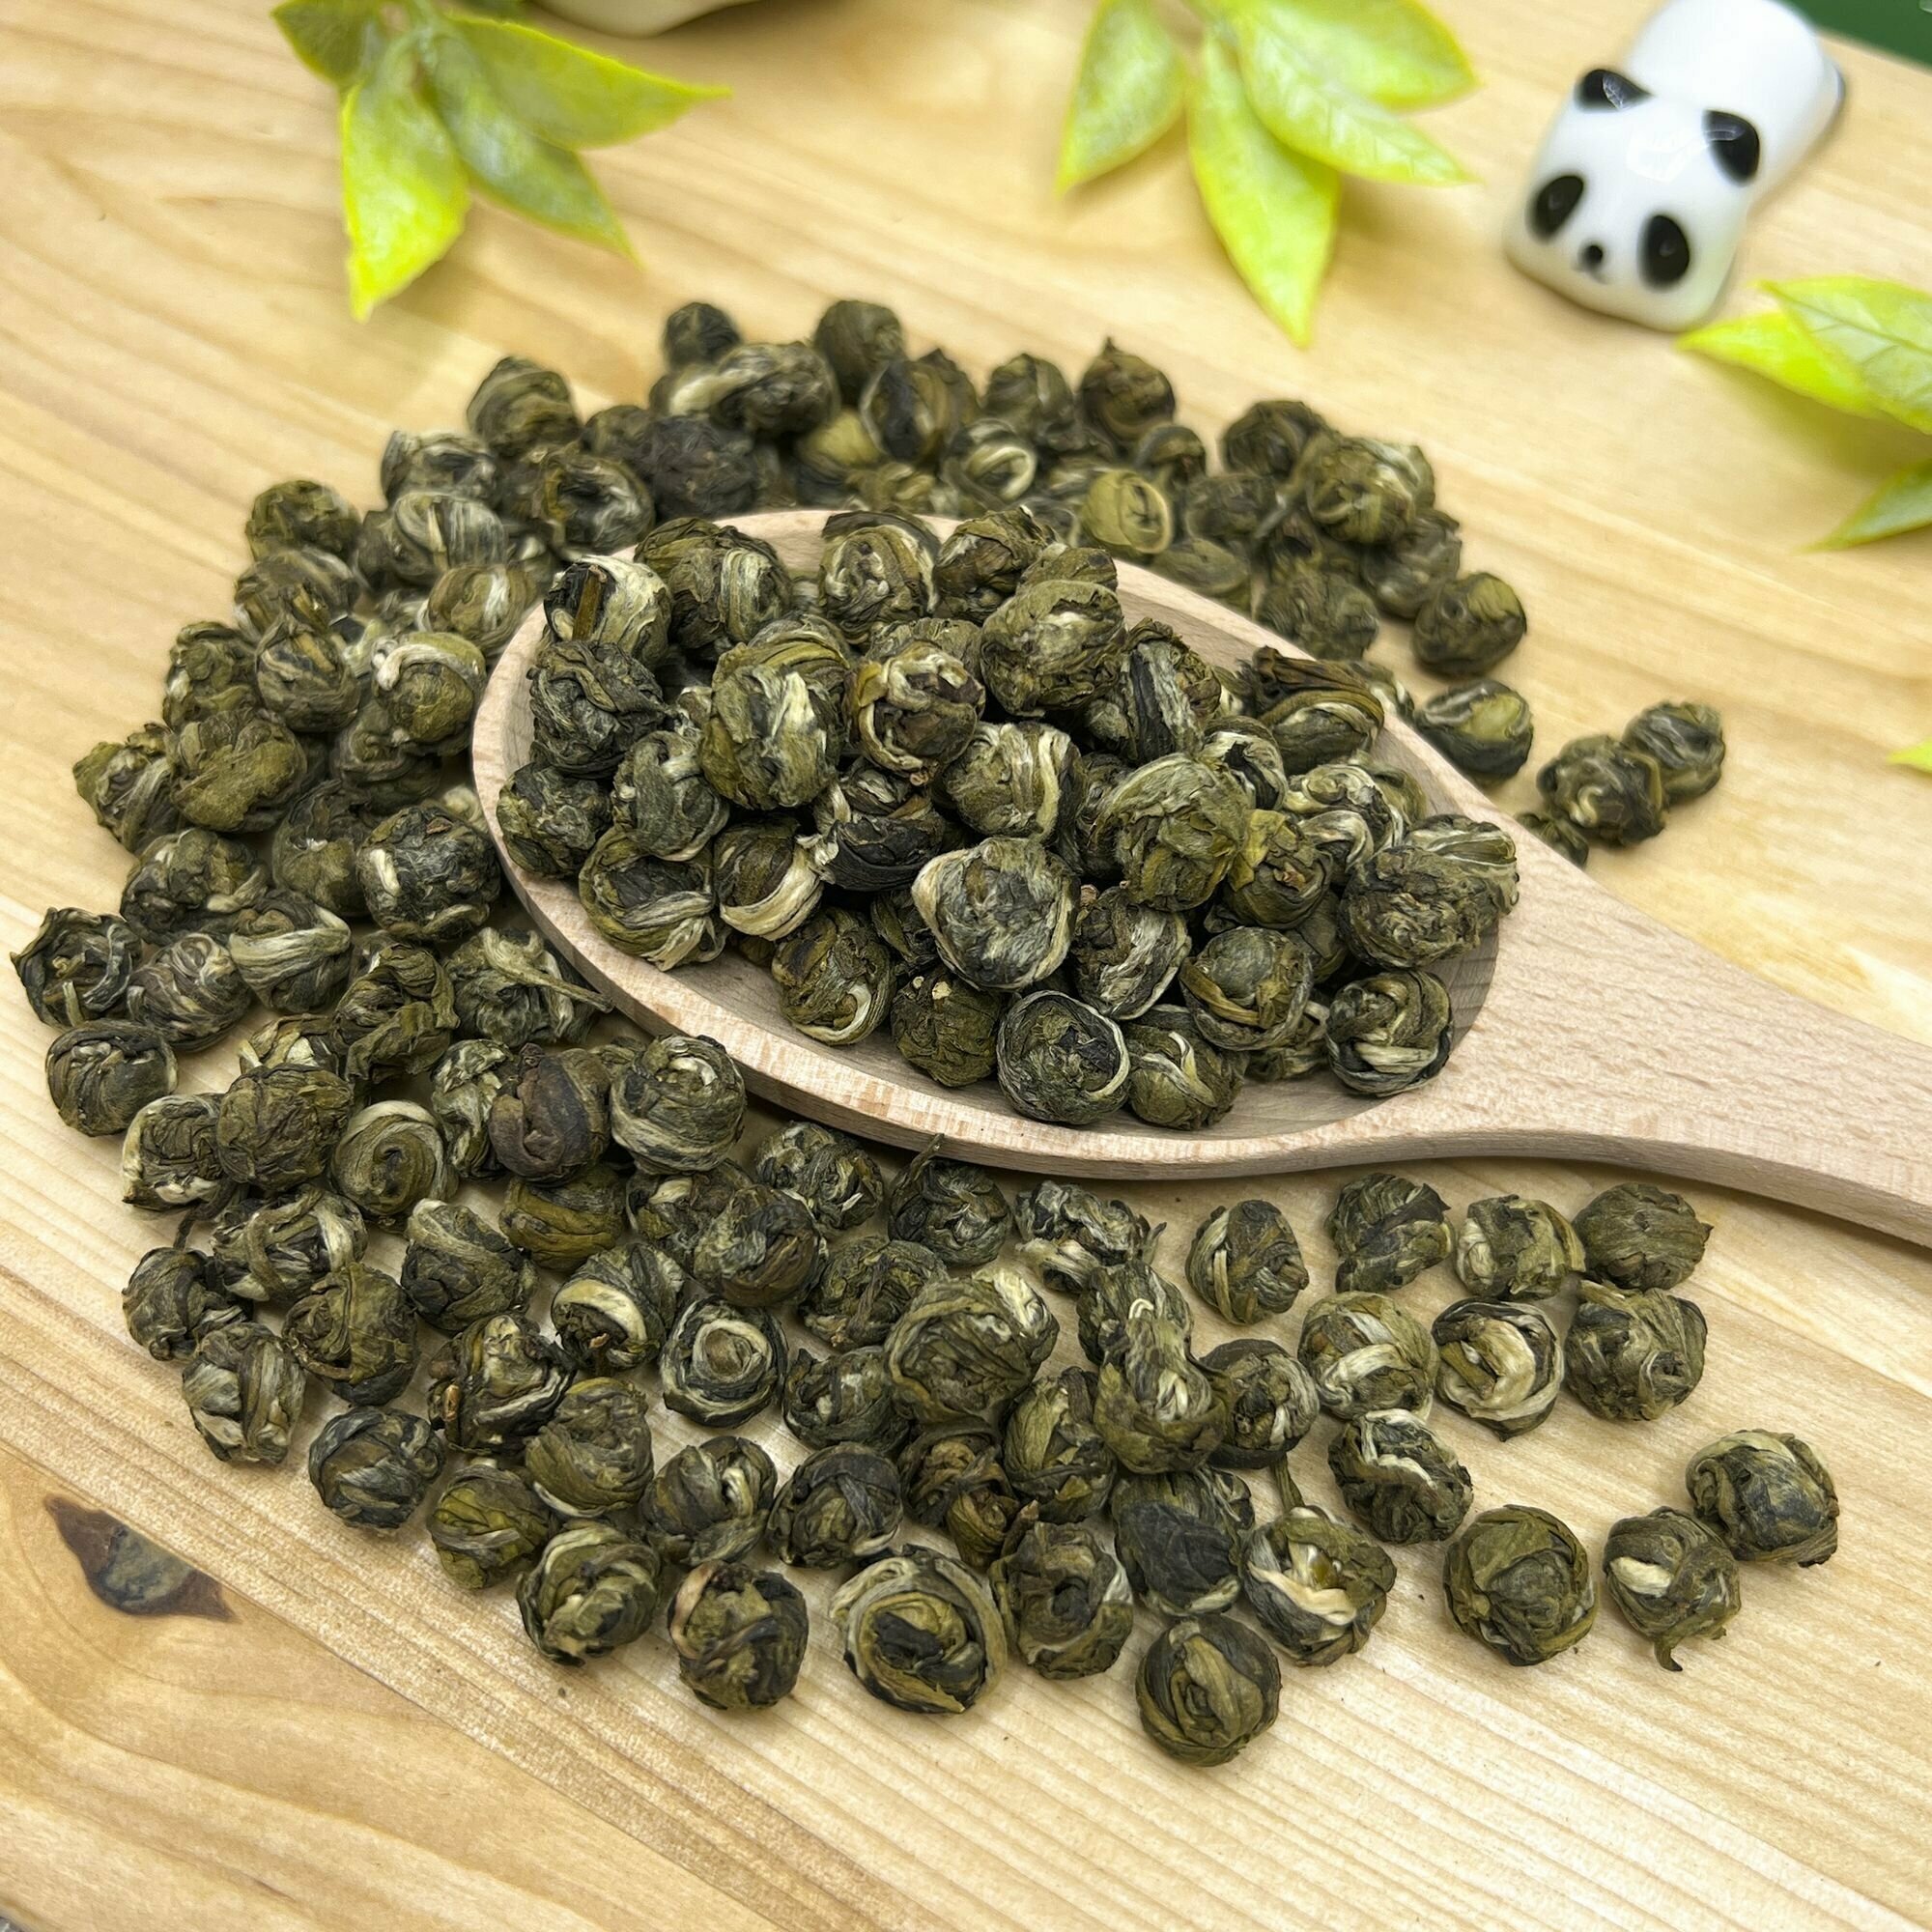 Китайский жасминовый чай без добавок Хуа Лун Чжу (Жасминовый скрученный чай) Полезный чай / HEALTHY TEA, 50 г